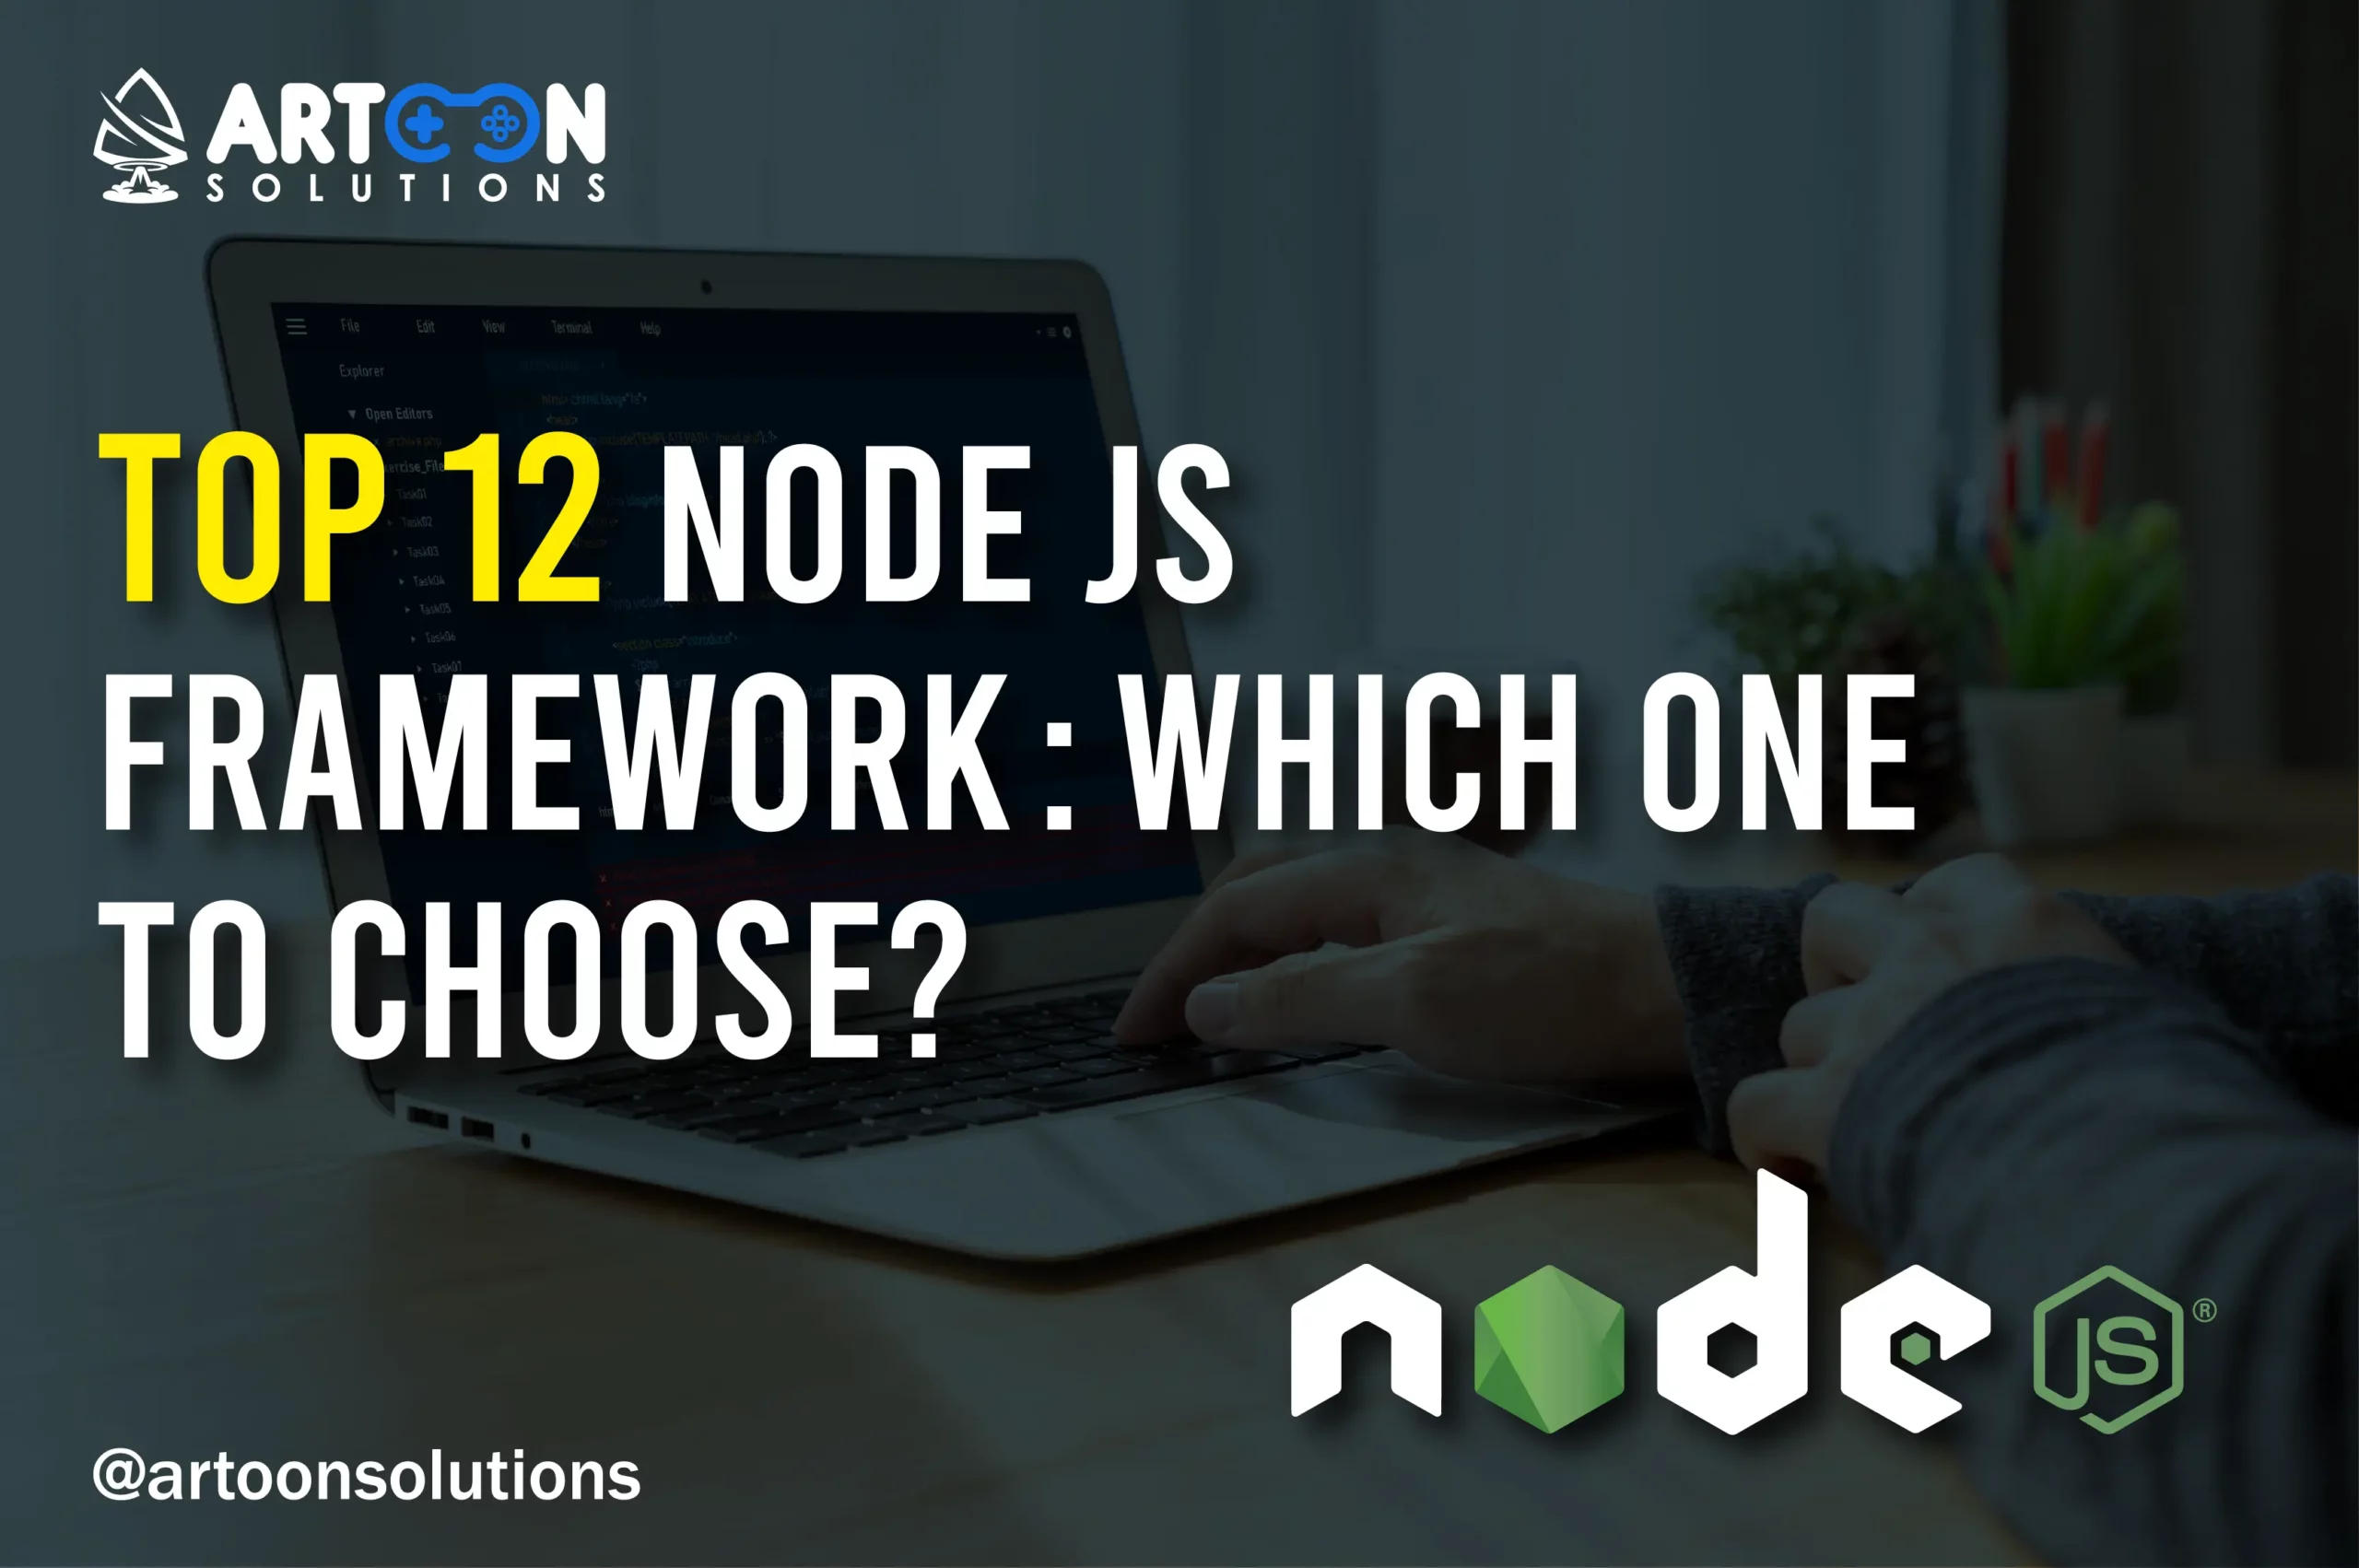 Node JS Frameworks